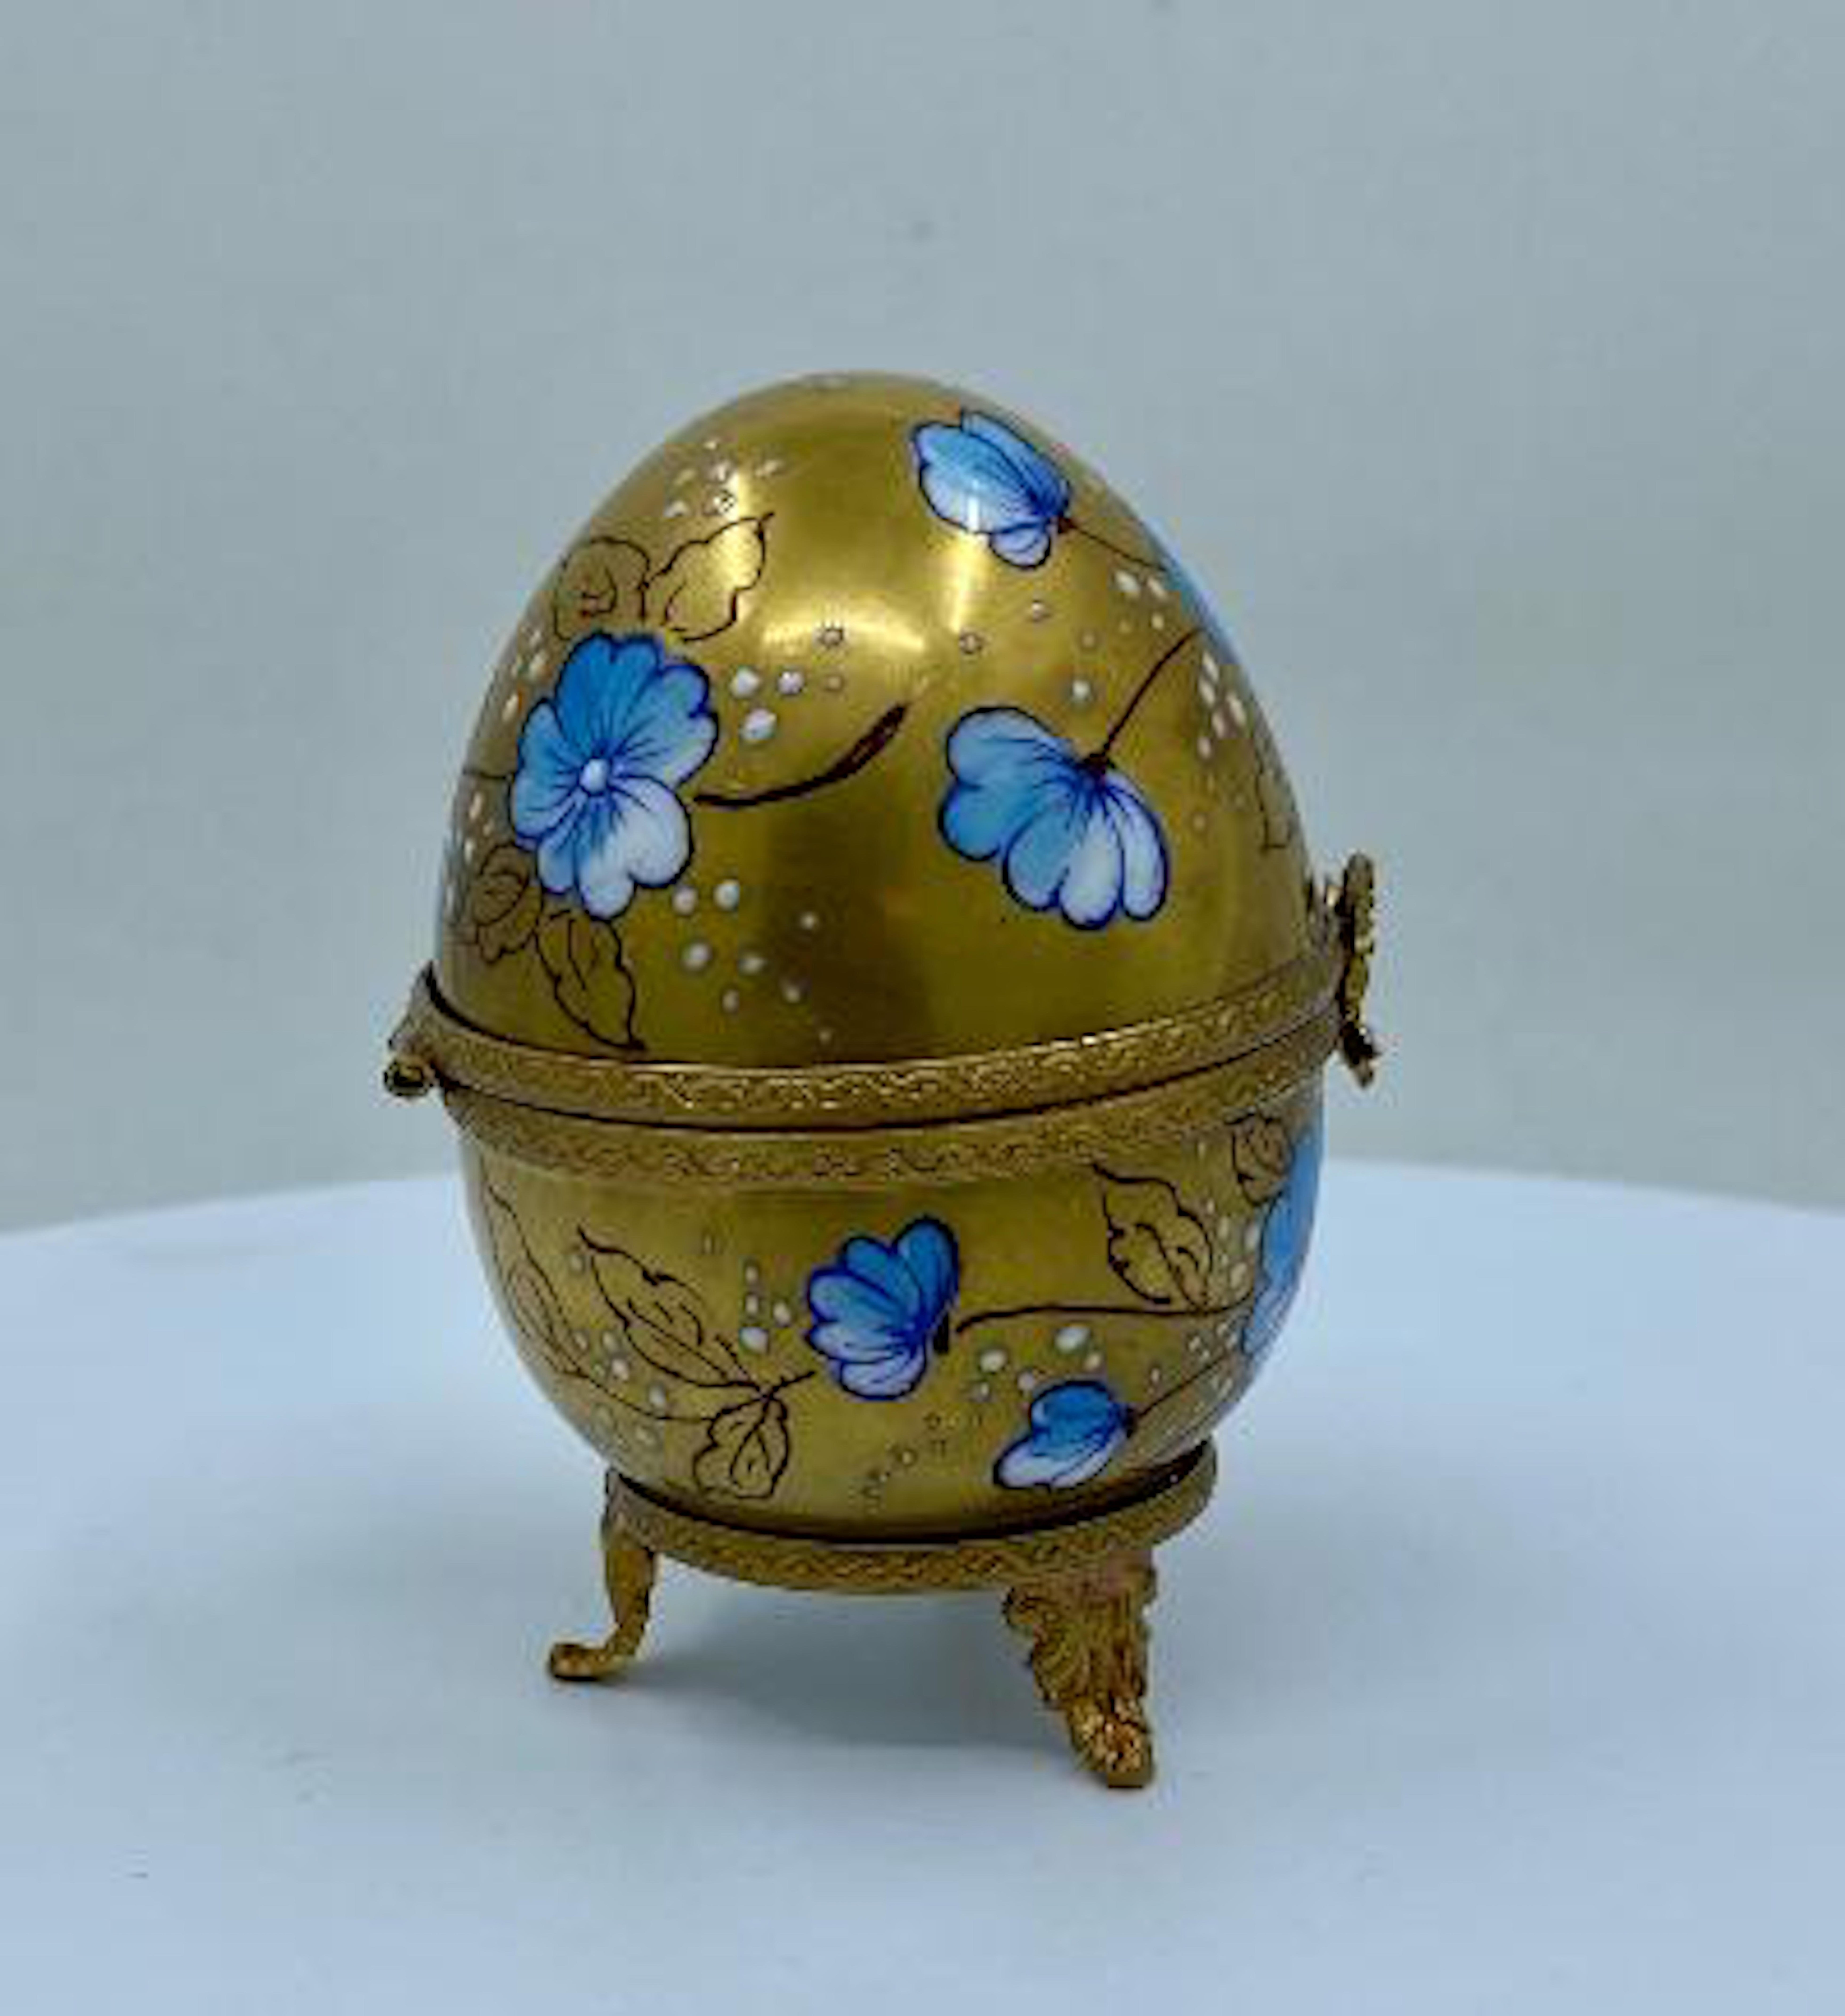 Belle Époque Exquisite Limoges France 24-Karat Gold Porcelain Egg with Perfume Bottle Inside